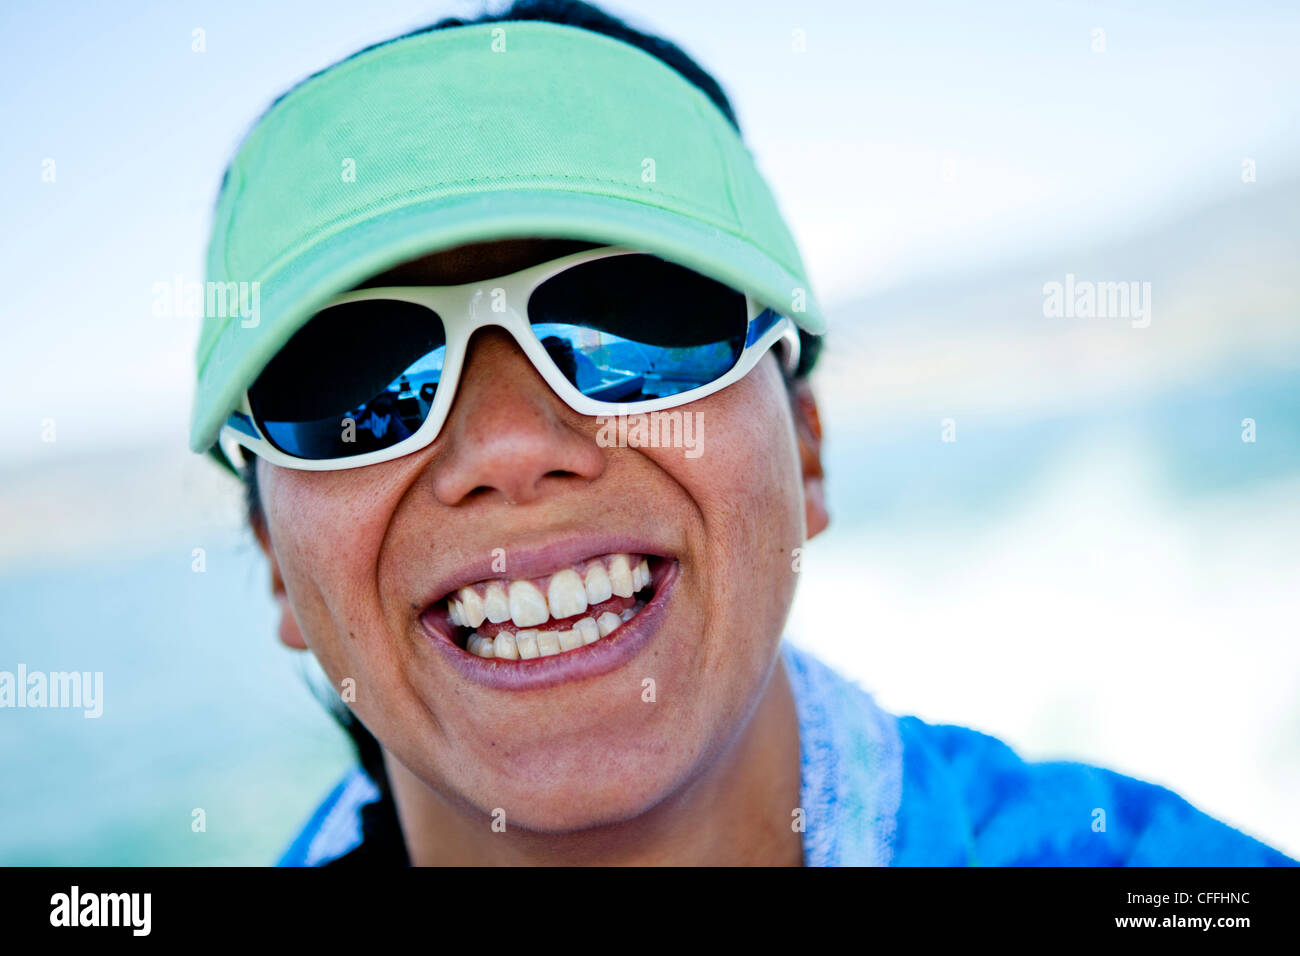 Una mujer en sus treinta sonríe mientras llevaba una visera verde espuma de costura, Bear Lake, Utah. Foto de stock